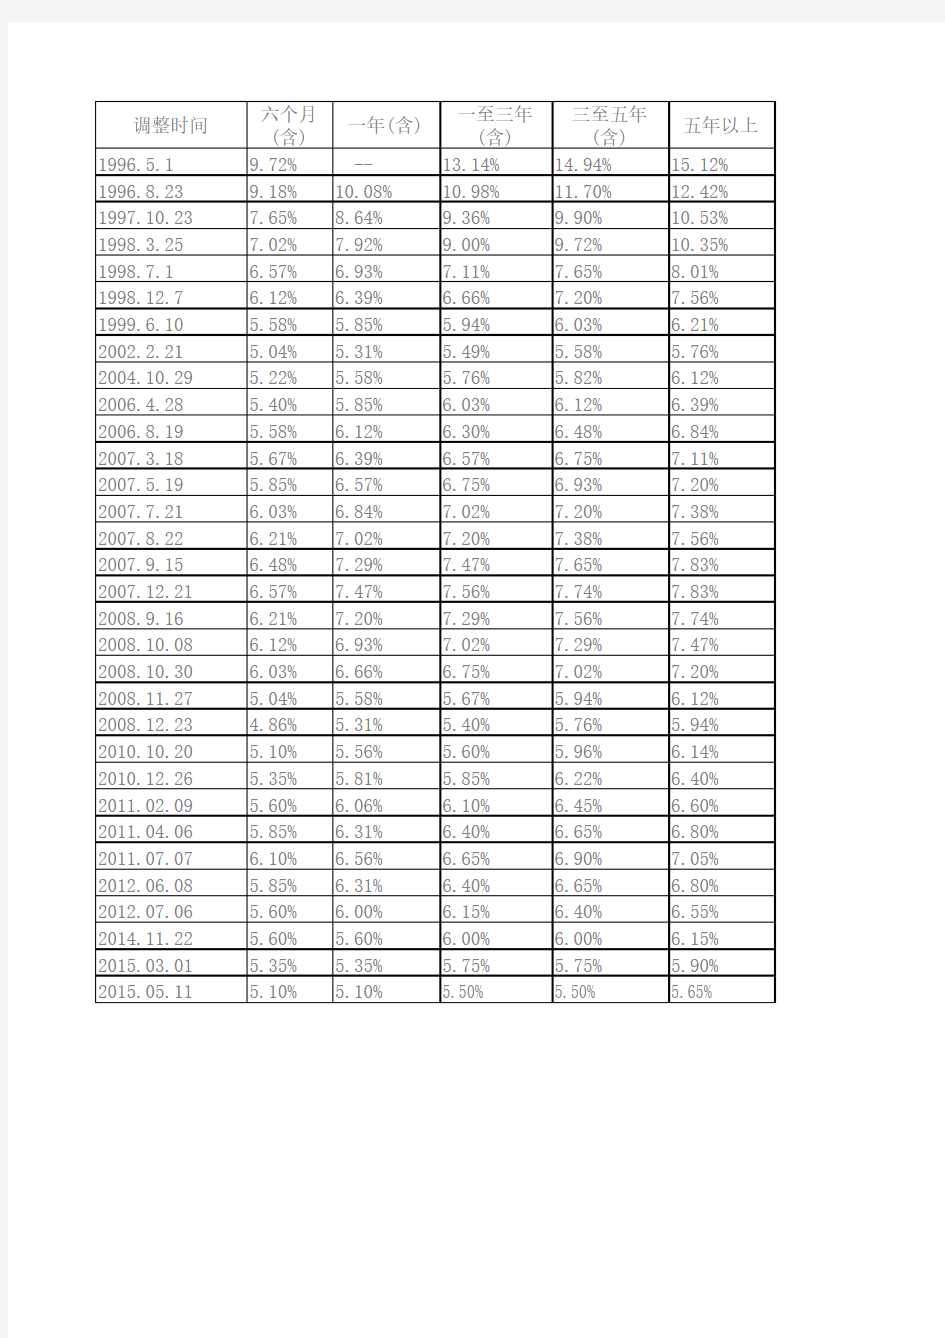 基准利率调整表截至2015年5月11日